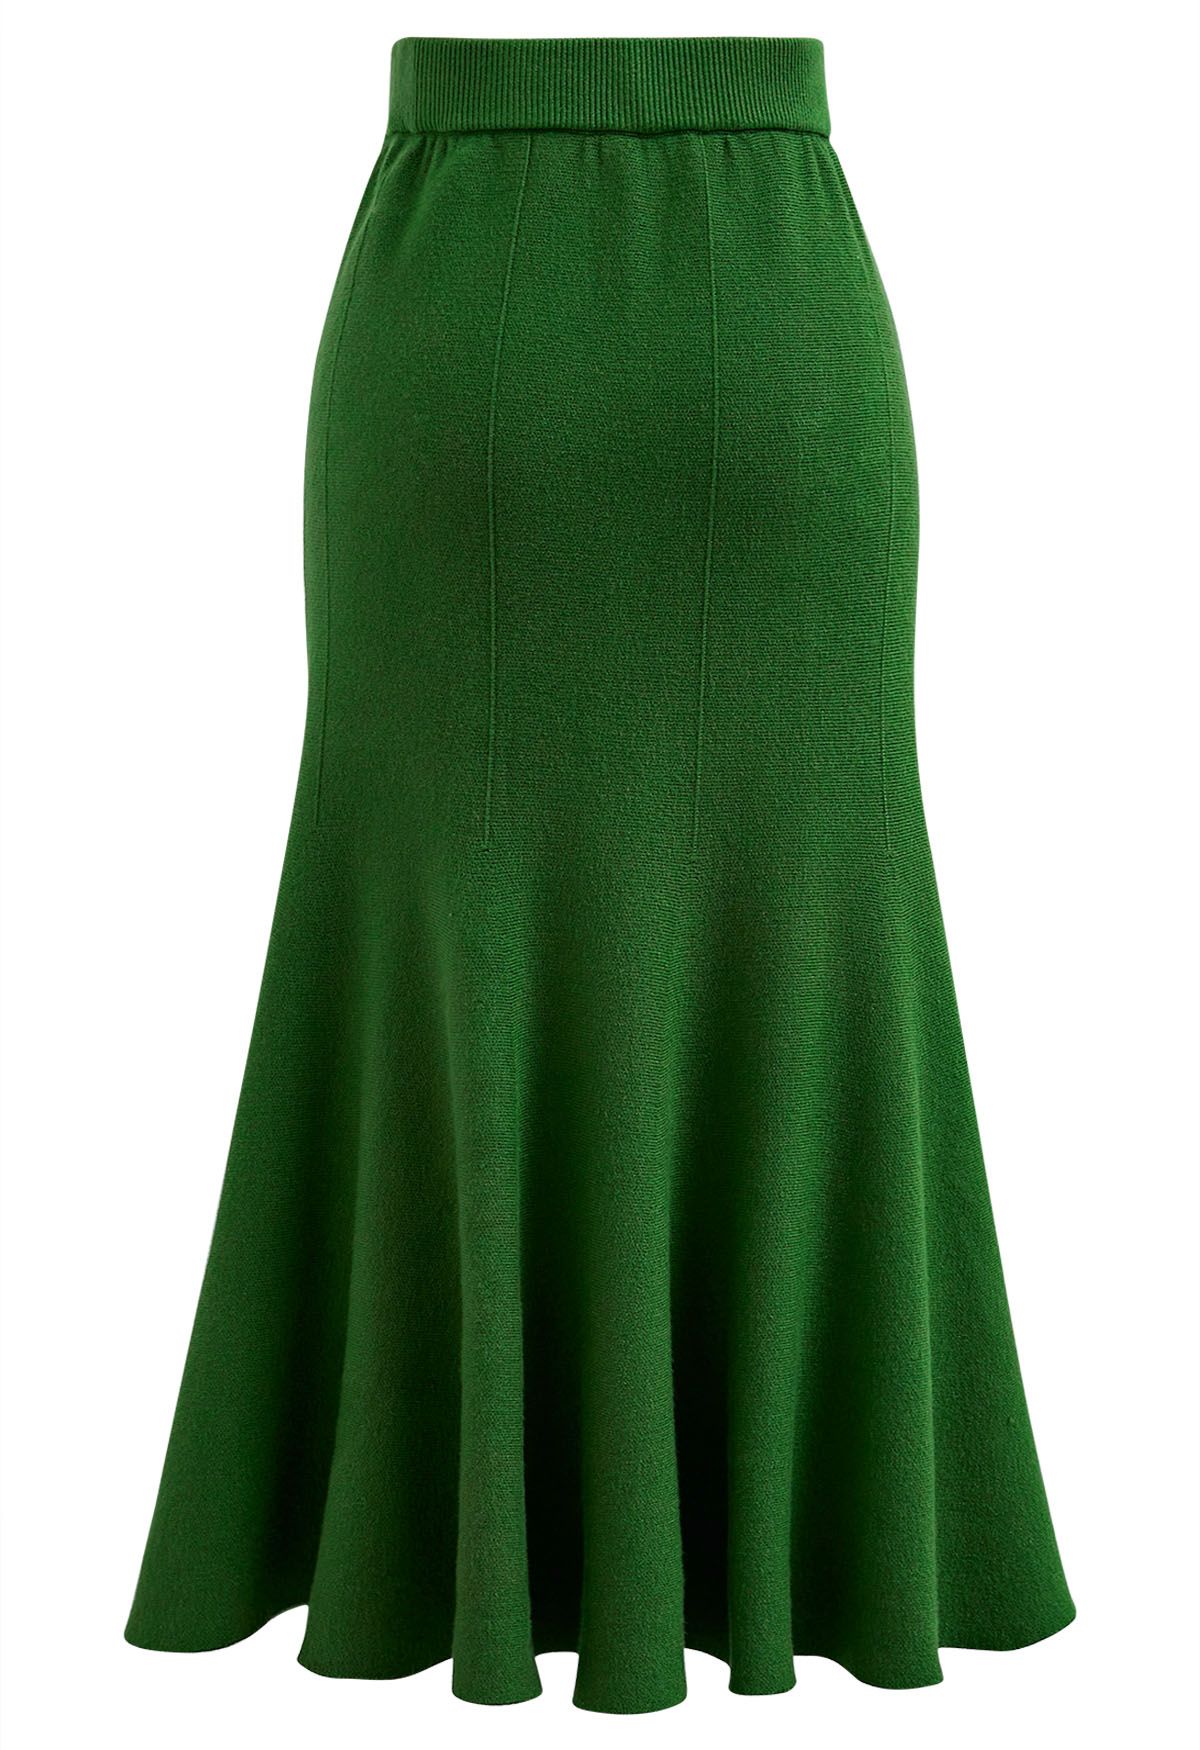 الرتوش هيم متماسكة تنورة ميدي باللون الأخضر